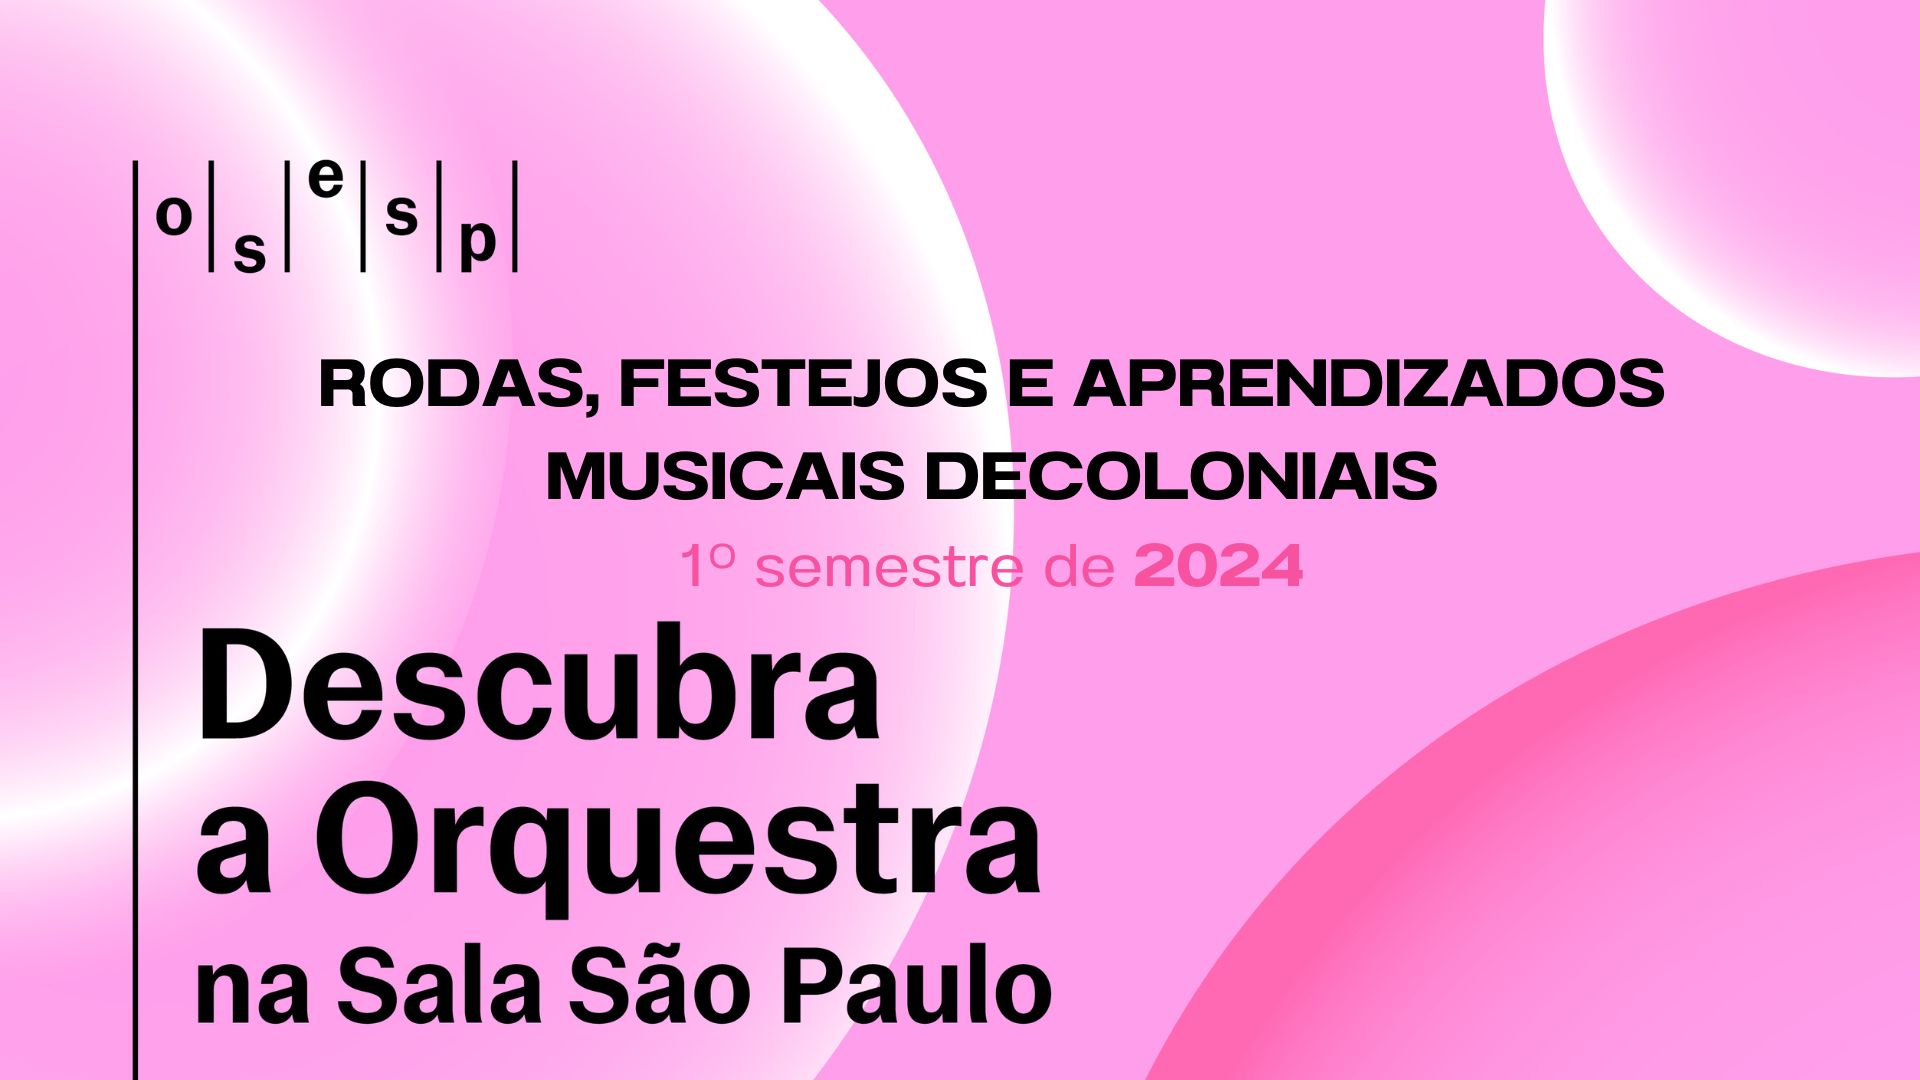 Curso de Apreciação Musical - RODAS, FESTEJOS E APRENDIZADOS DECOLONIAIS - 1º Semestre/2024